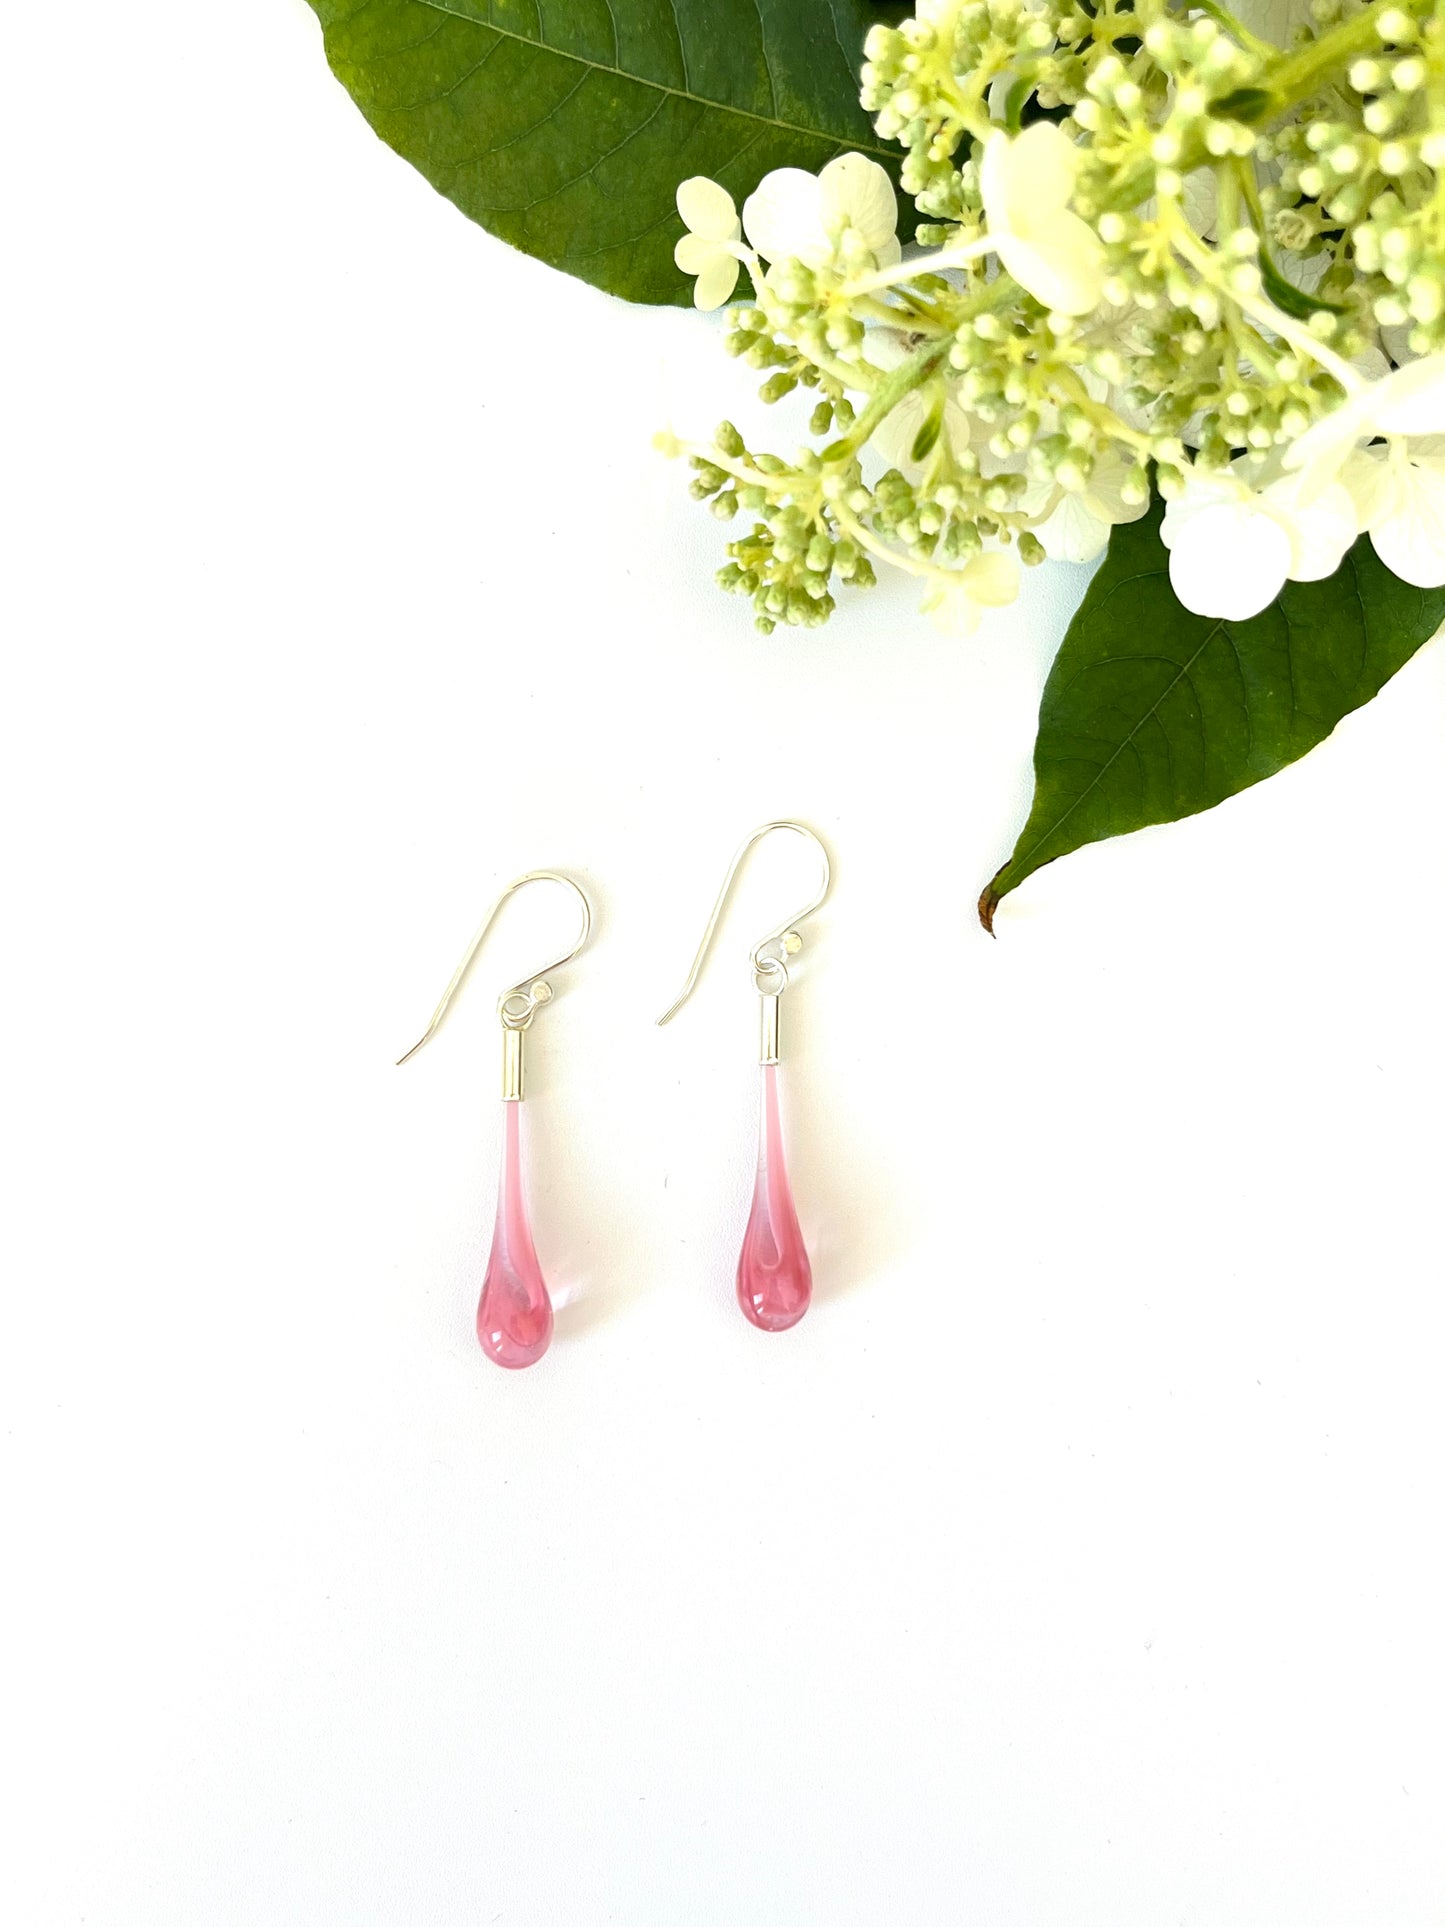 Glass Teardrop Earrings - Pink Marble Swirl